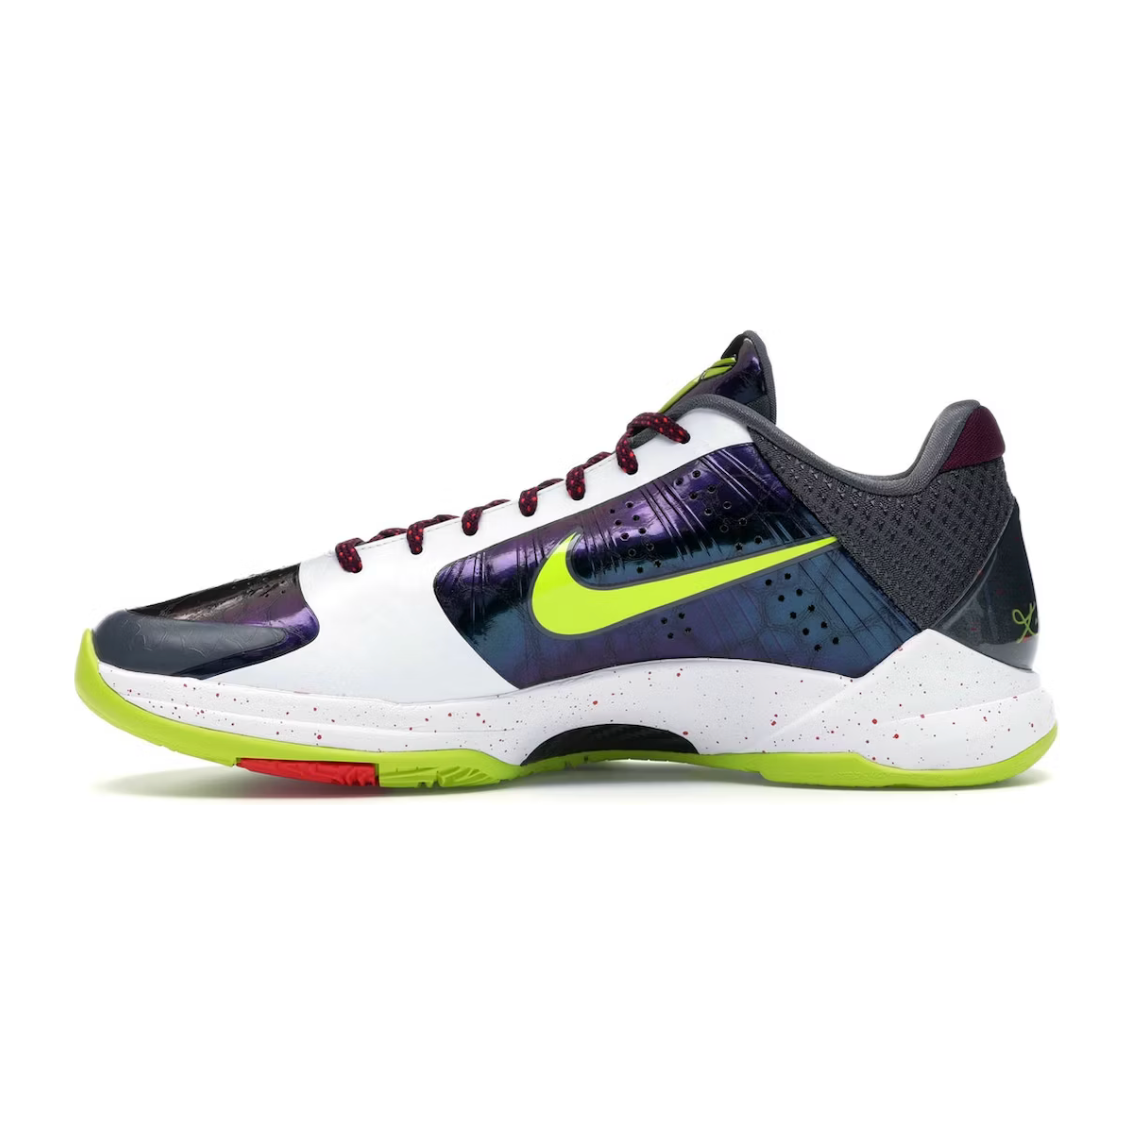 Nike Kobe 5 Protro Chaos by Nike from £495.00